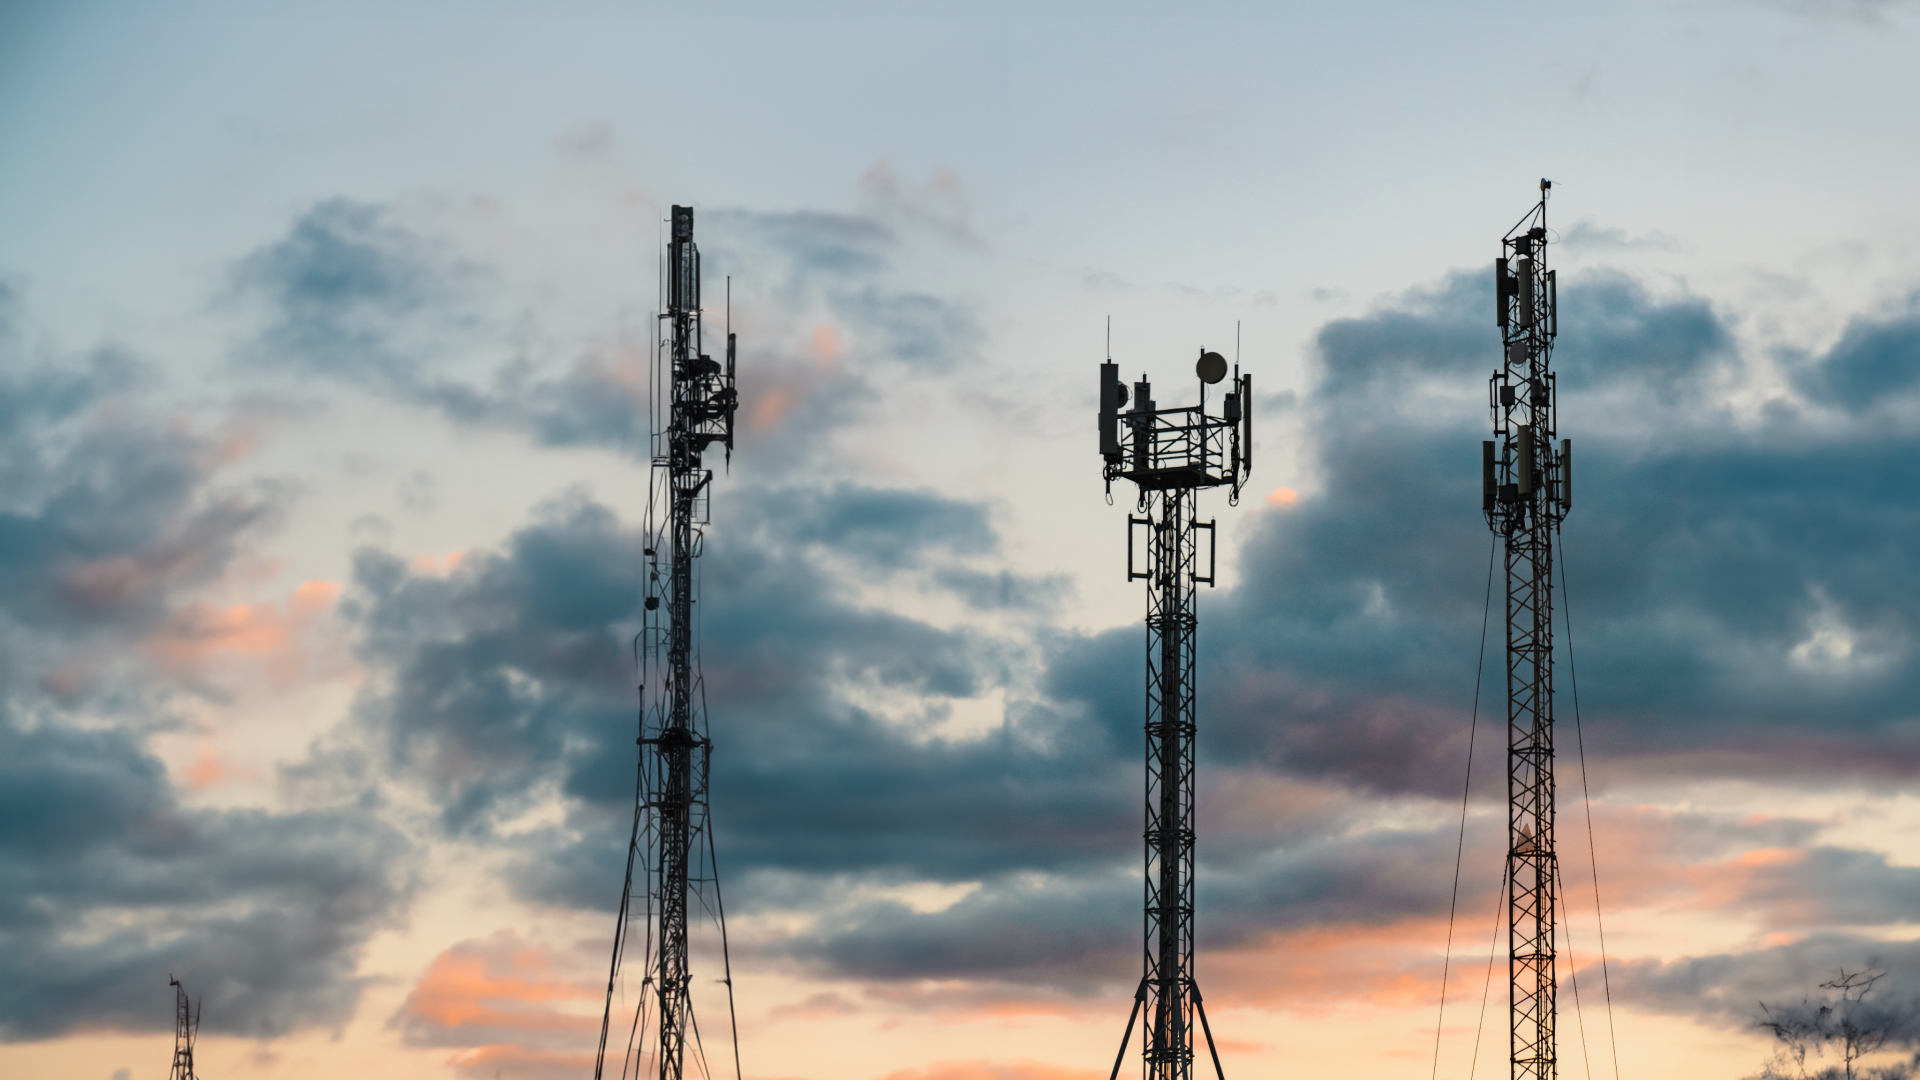 Telecommunications towers